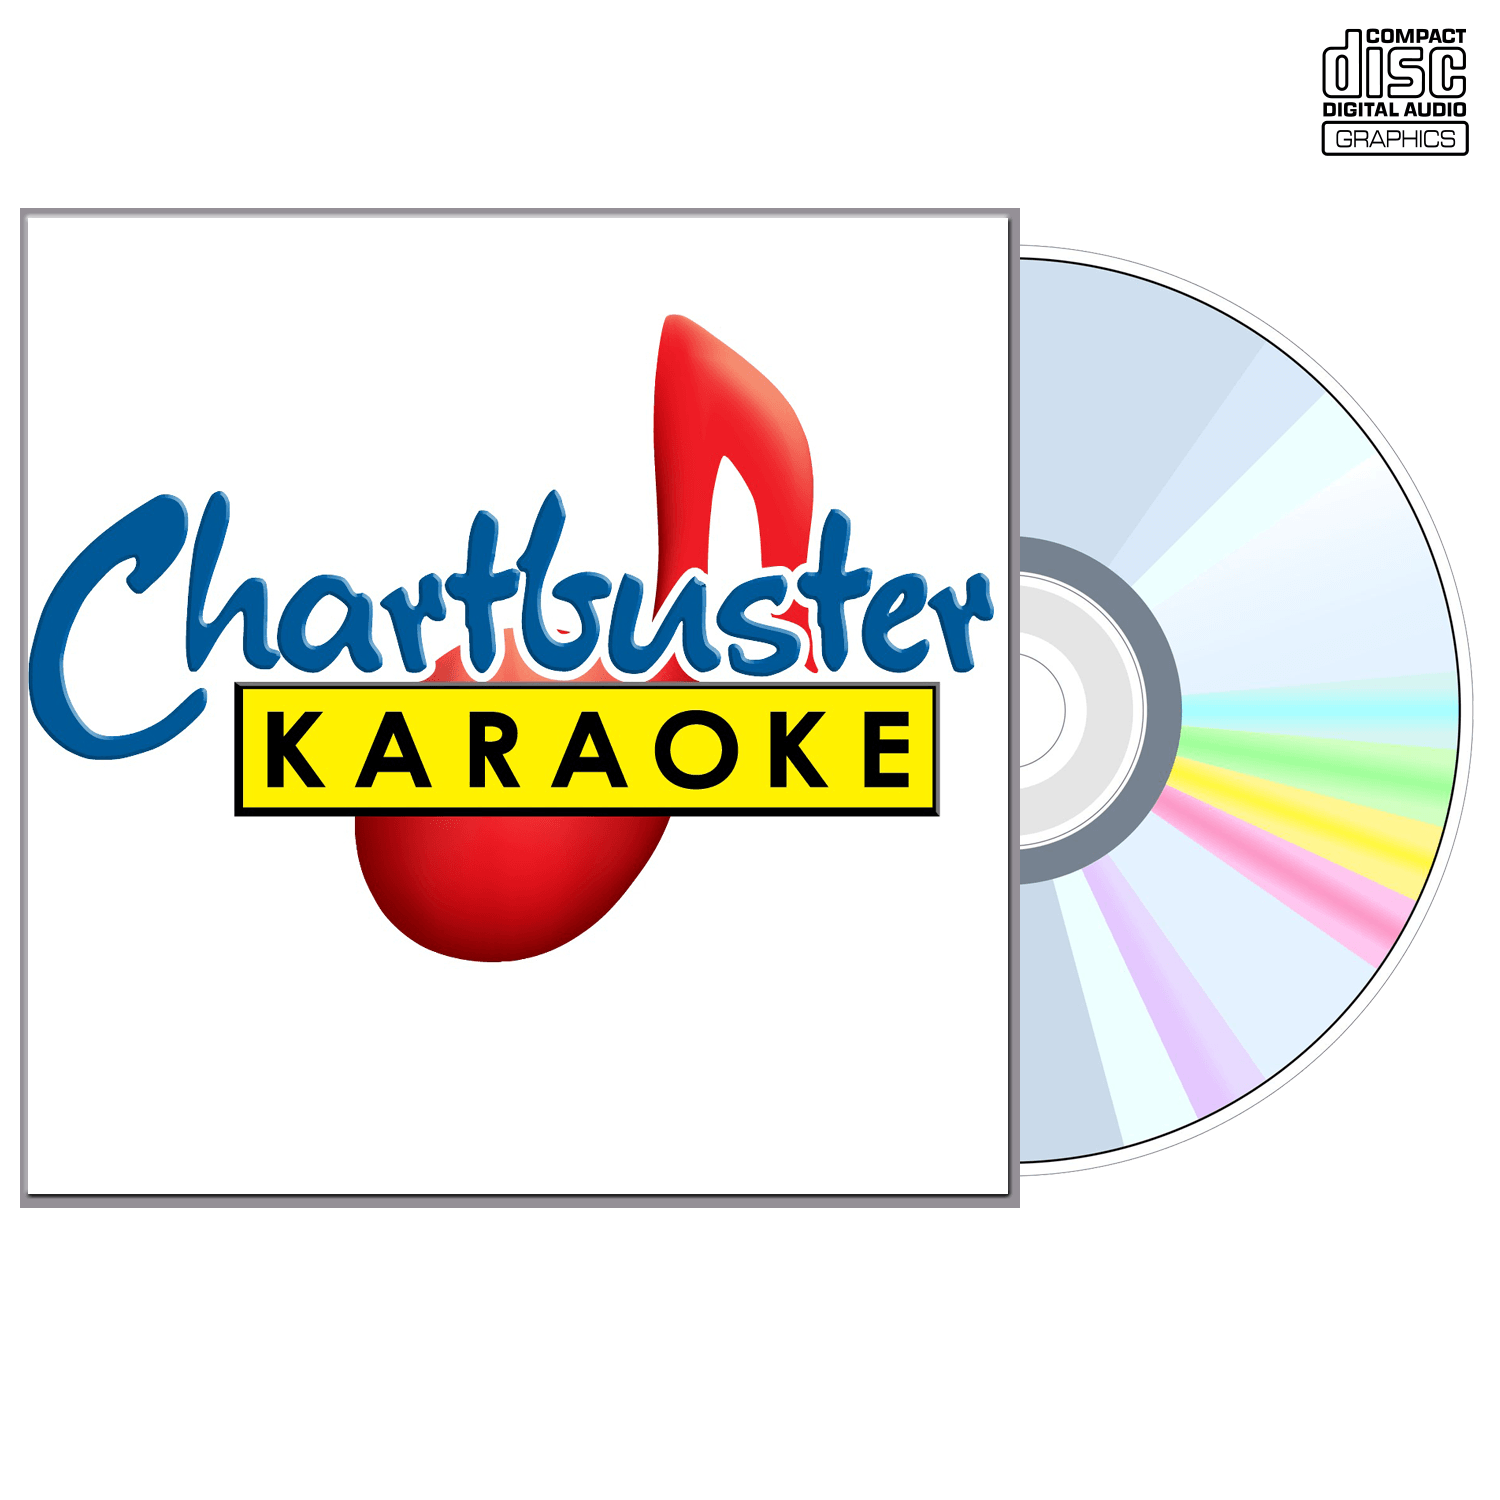 Alabama Vol 3 - CD+G - Chartbuster Karaoke - Karaoke Home Entertainment